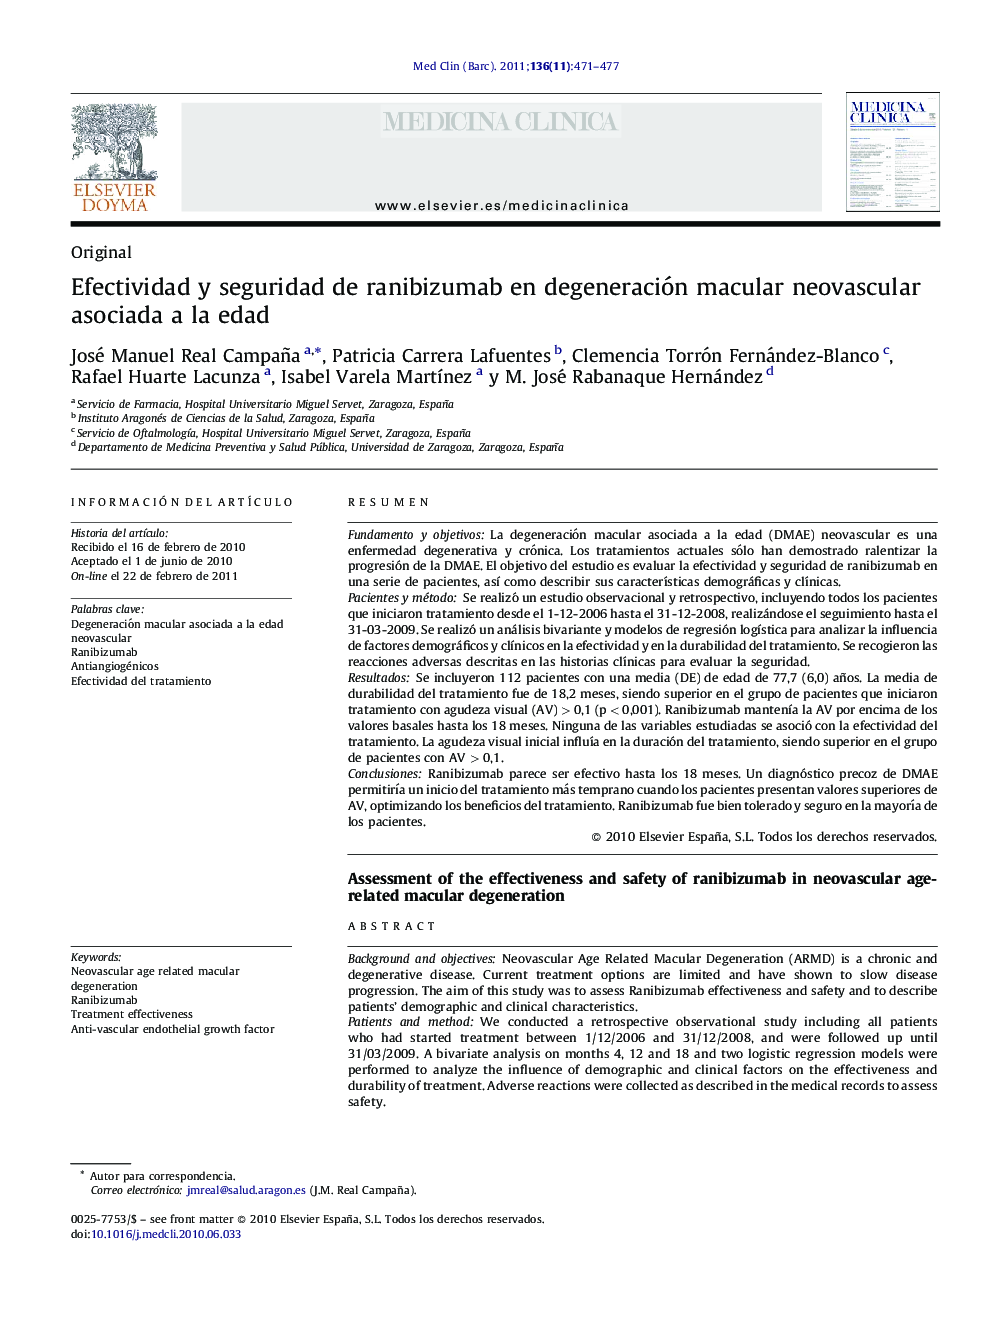 Efectividad y seguridad de ranibizumab en degeneración macular neovascular asociada a la edad